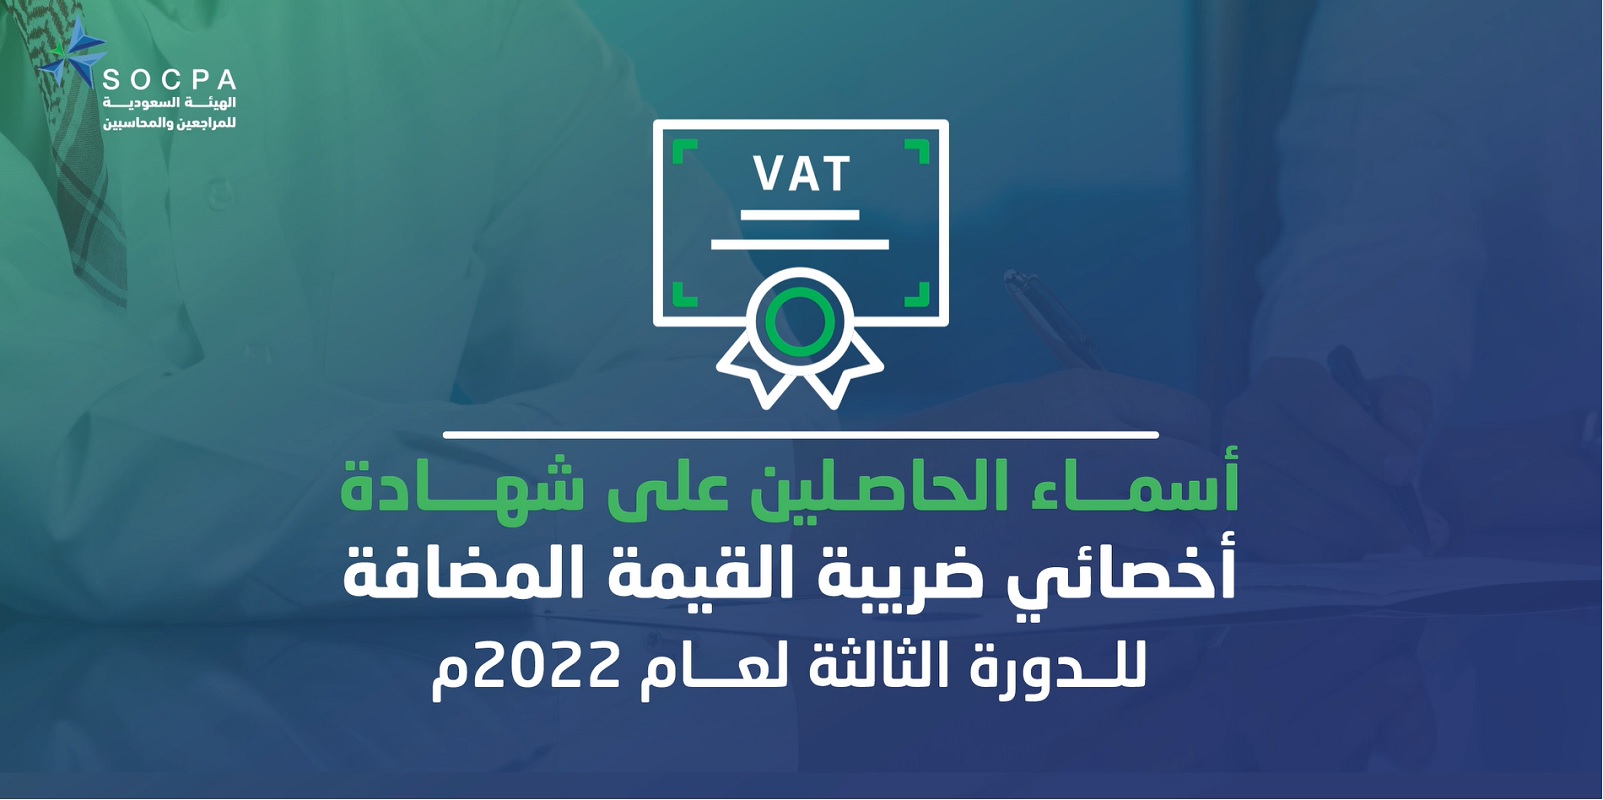 الهيئة تنشر أسماء الحاصلين على شهادة اخصائي ضريبة القيمة المضافة